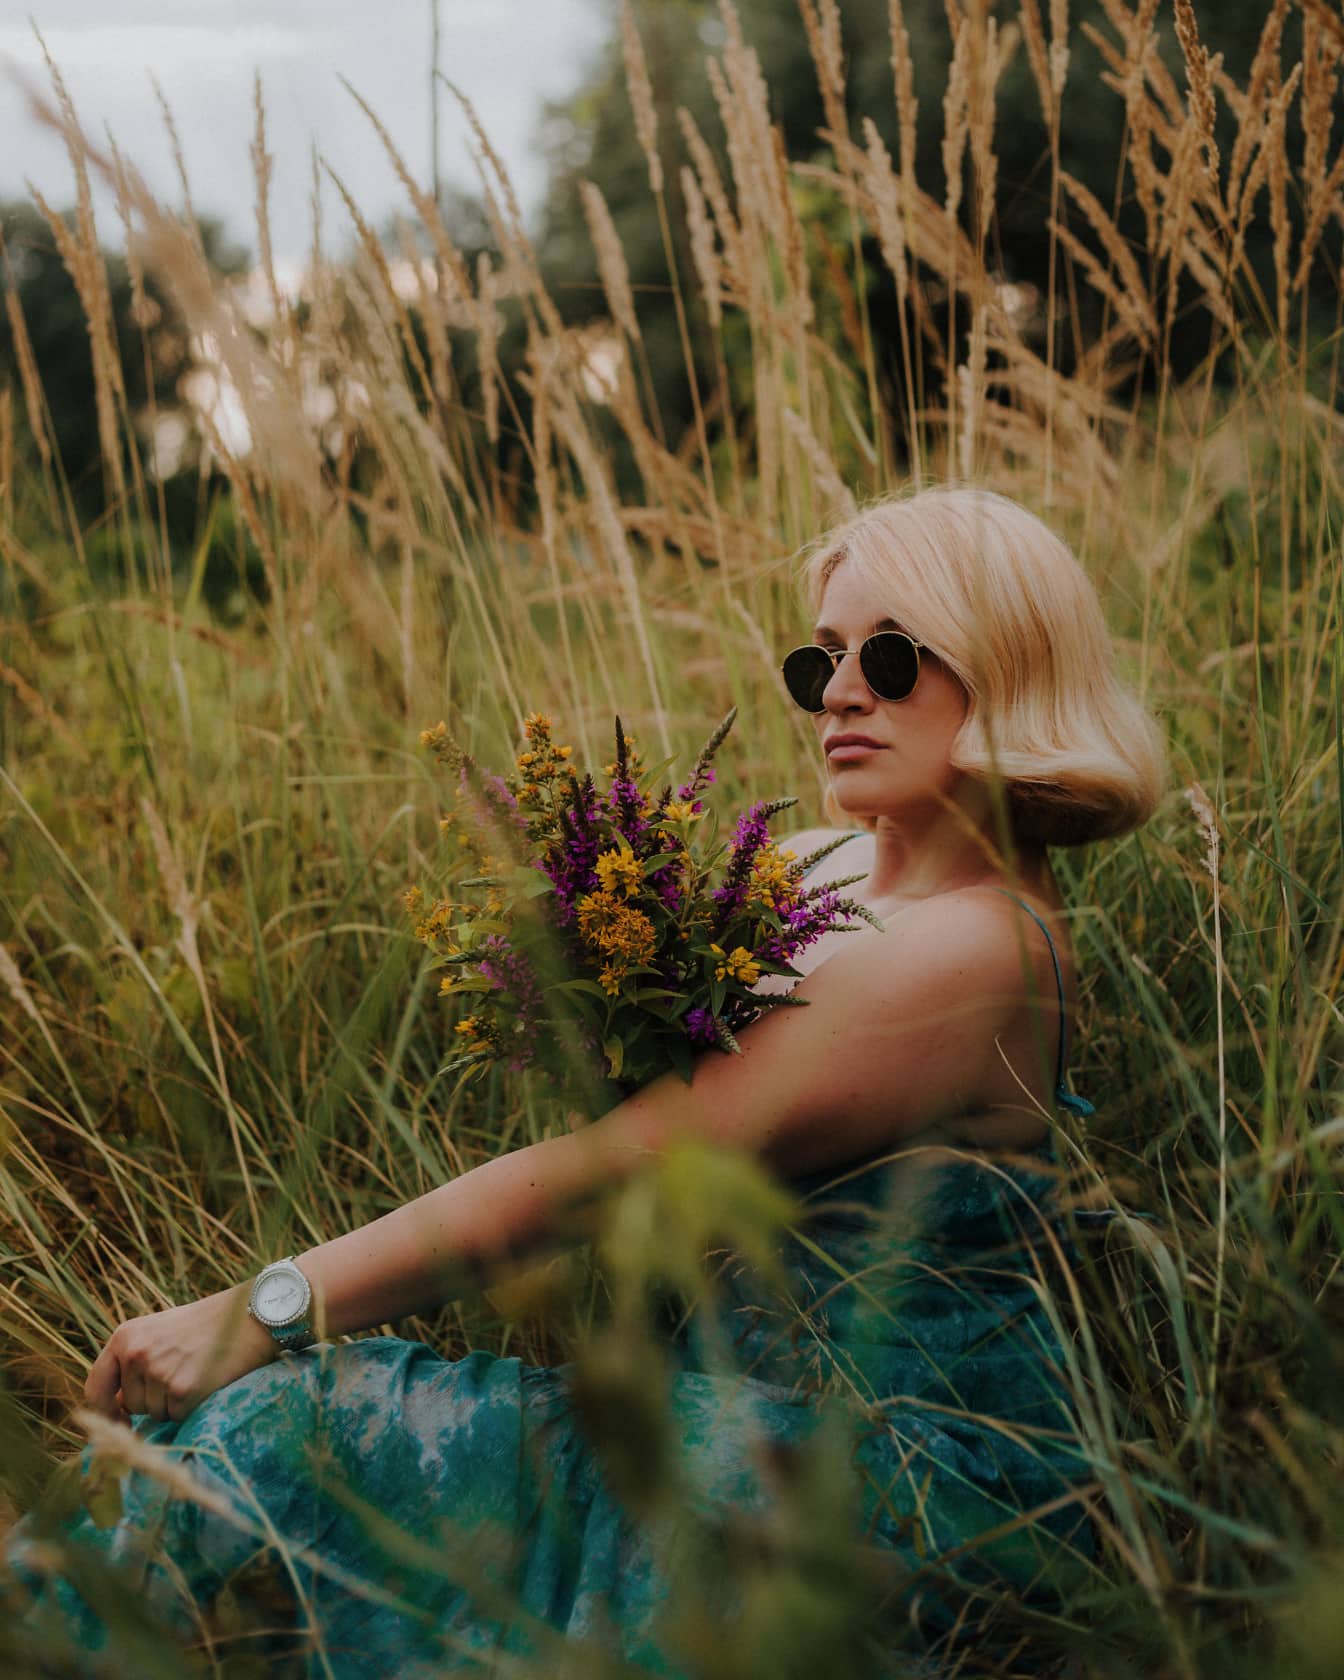 Czarująca blondynka młoda kobieta fotomodelka pozuje w roślinach trawiastych z bukietem polnych kwiatów